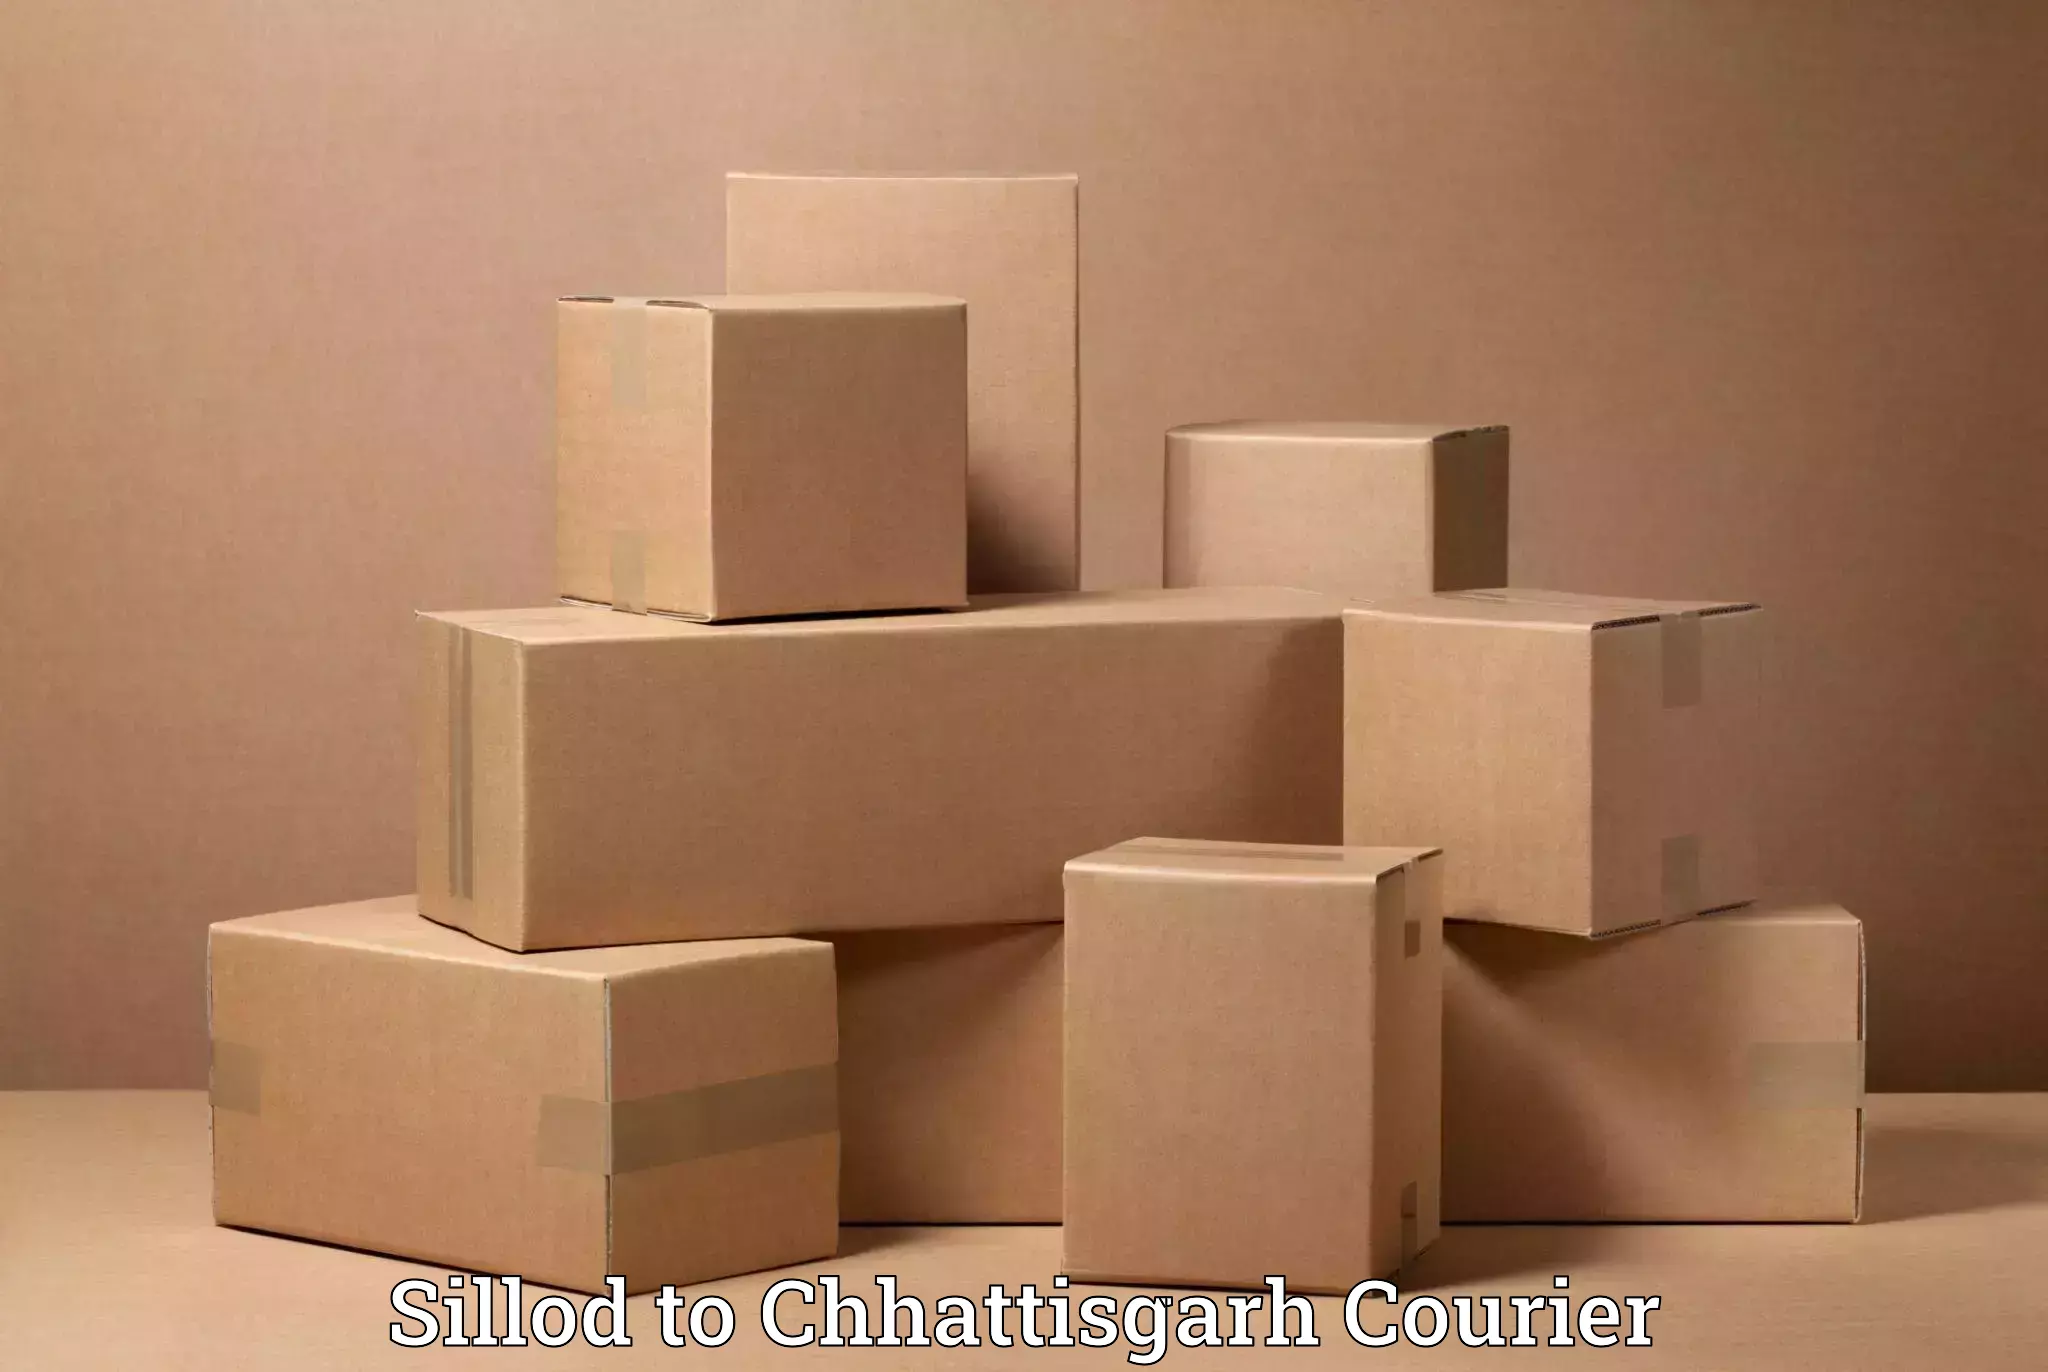 Professional relocation services Sillod to Chhattisgarh